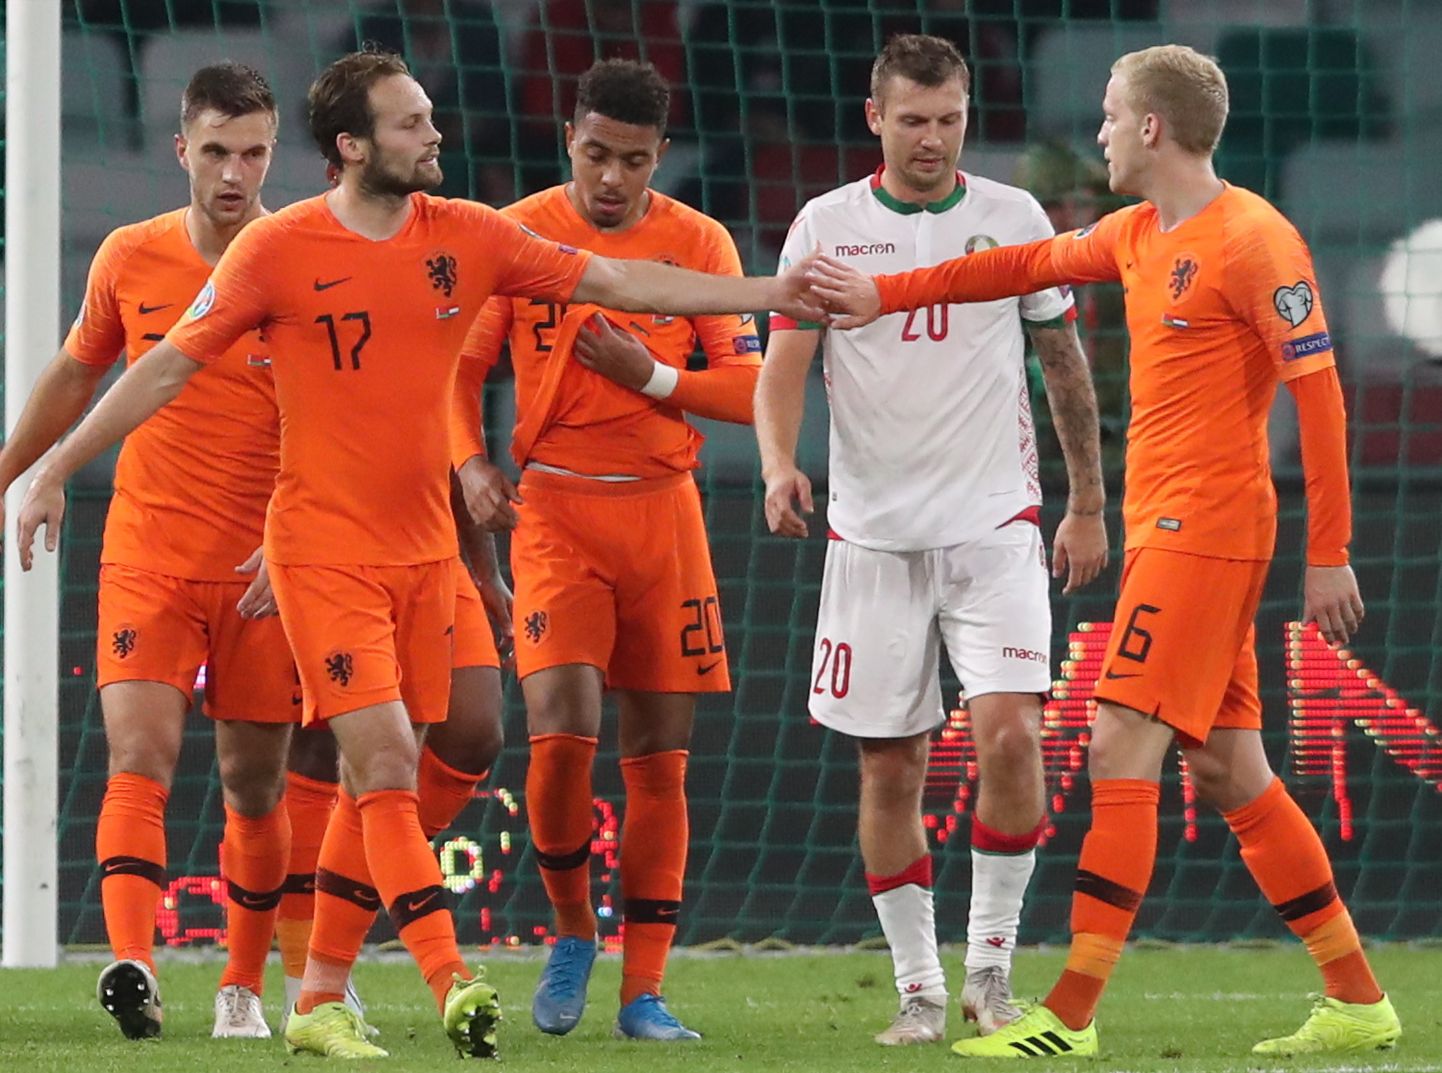 Hollandlased väravat tähistamas.